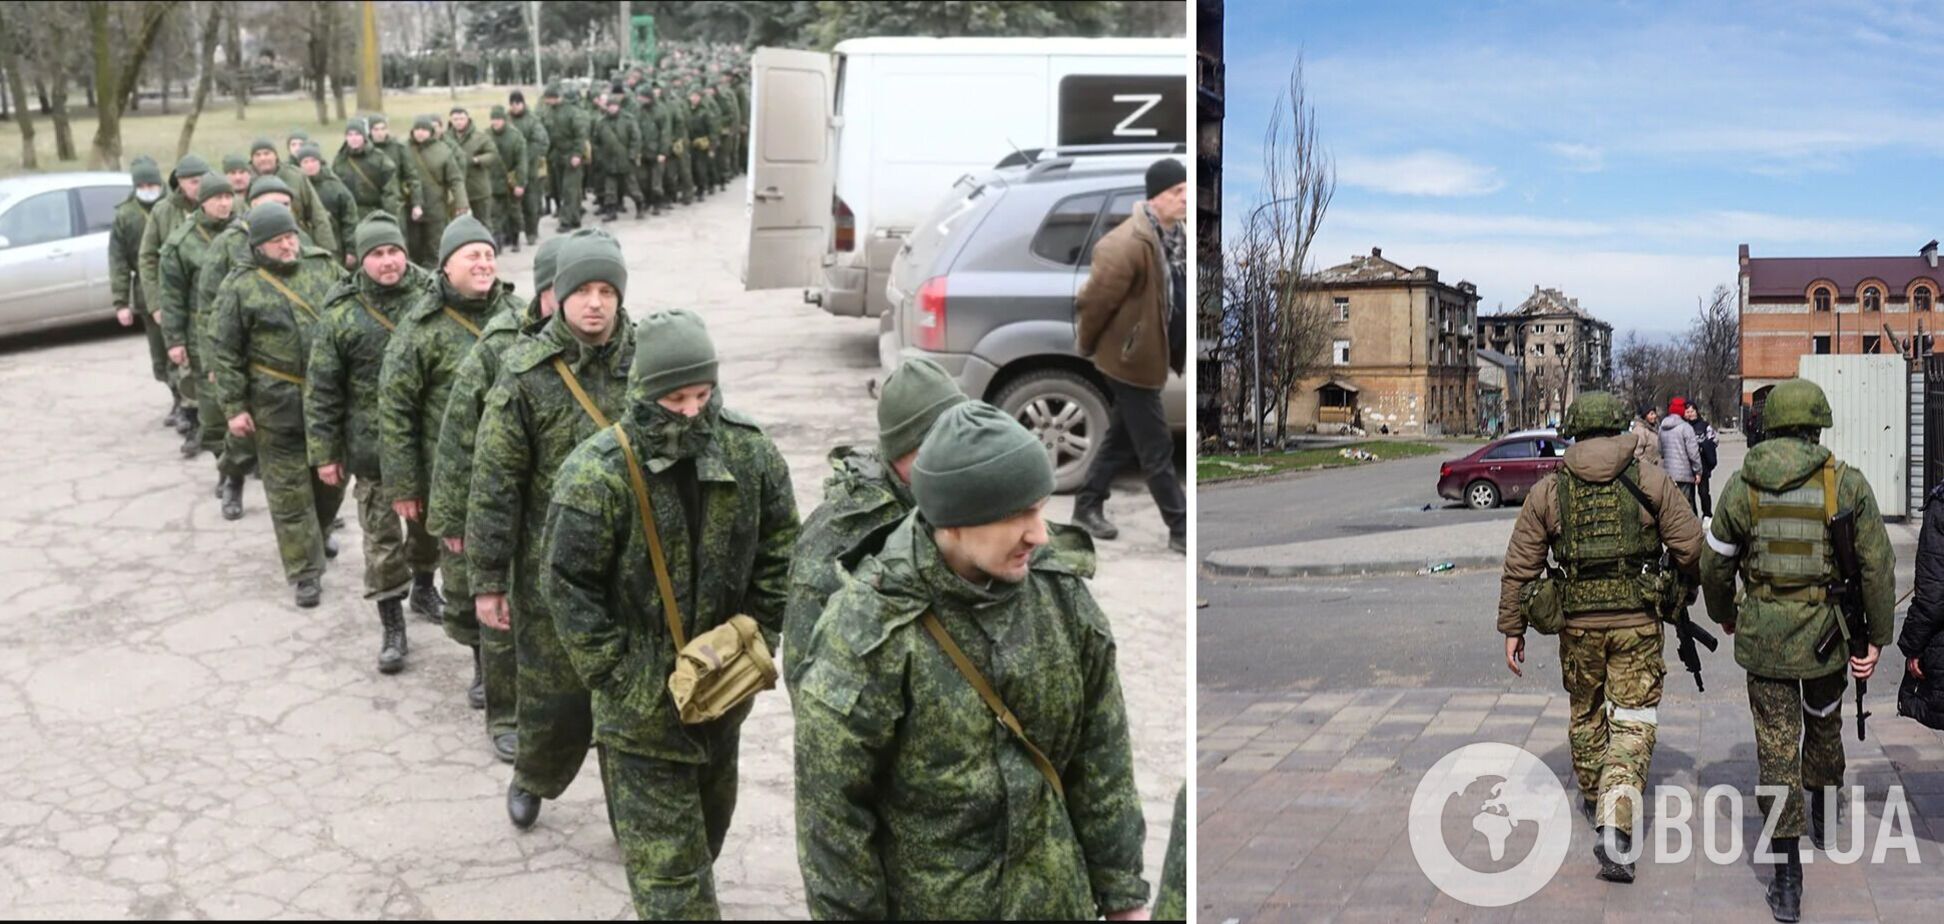 РФ использует лидеров этнических меньшинств для мобилизации добровольцев на войну против Украины – ISW